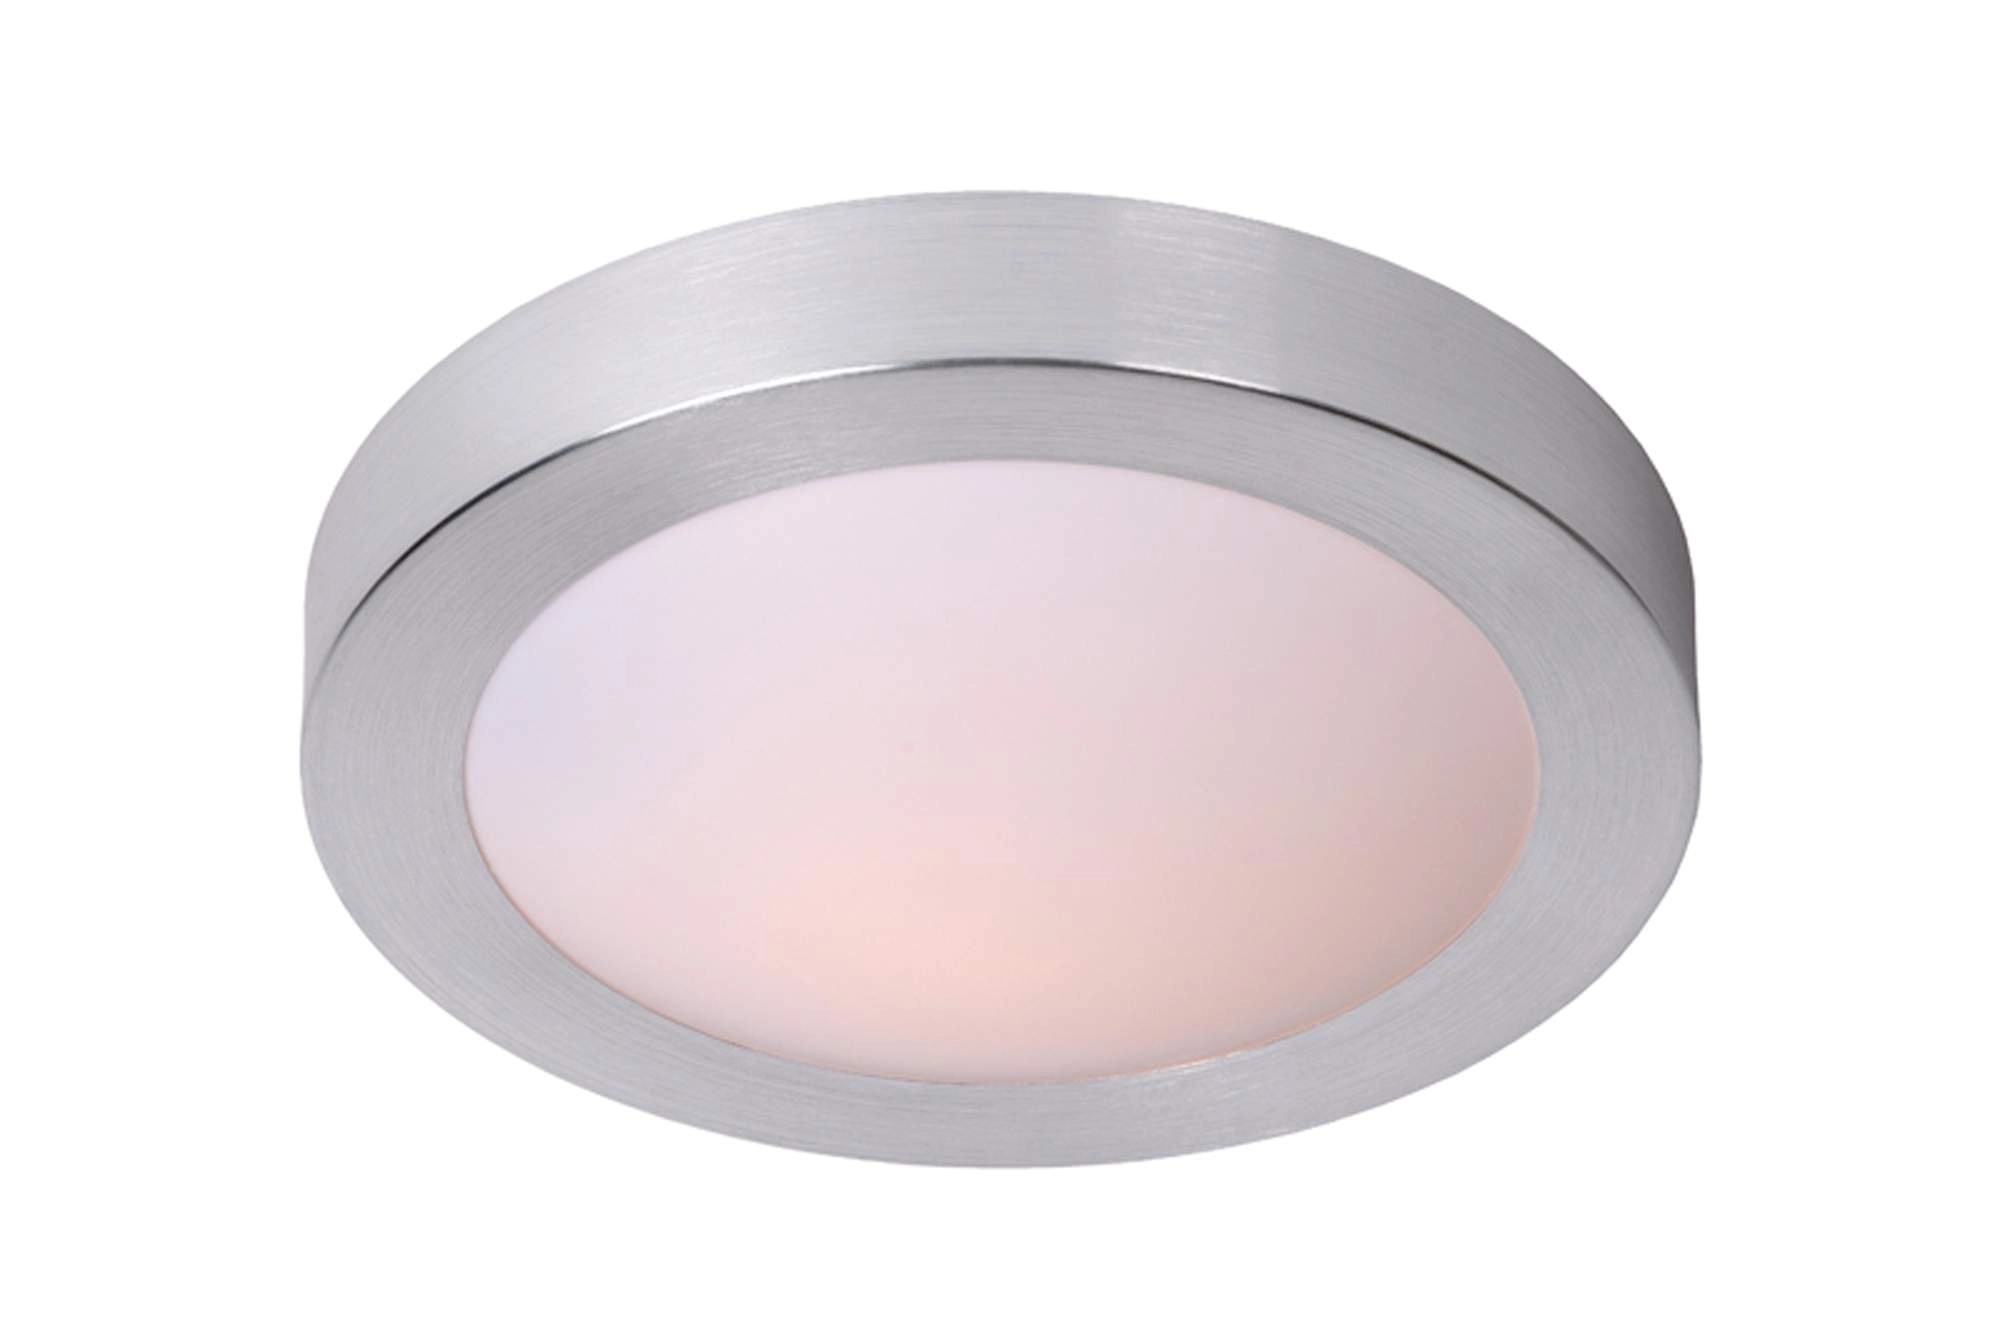 LU 79158/02/12 Lucide FRESH - Flush ceiling light Bathroom - Ø 35 cm - 2xE27 - IP44 - Satin Chrome